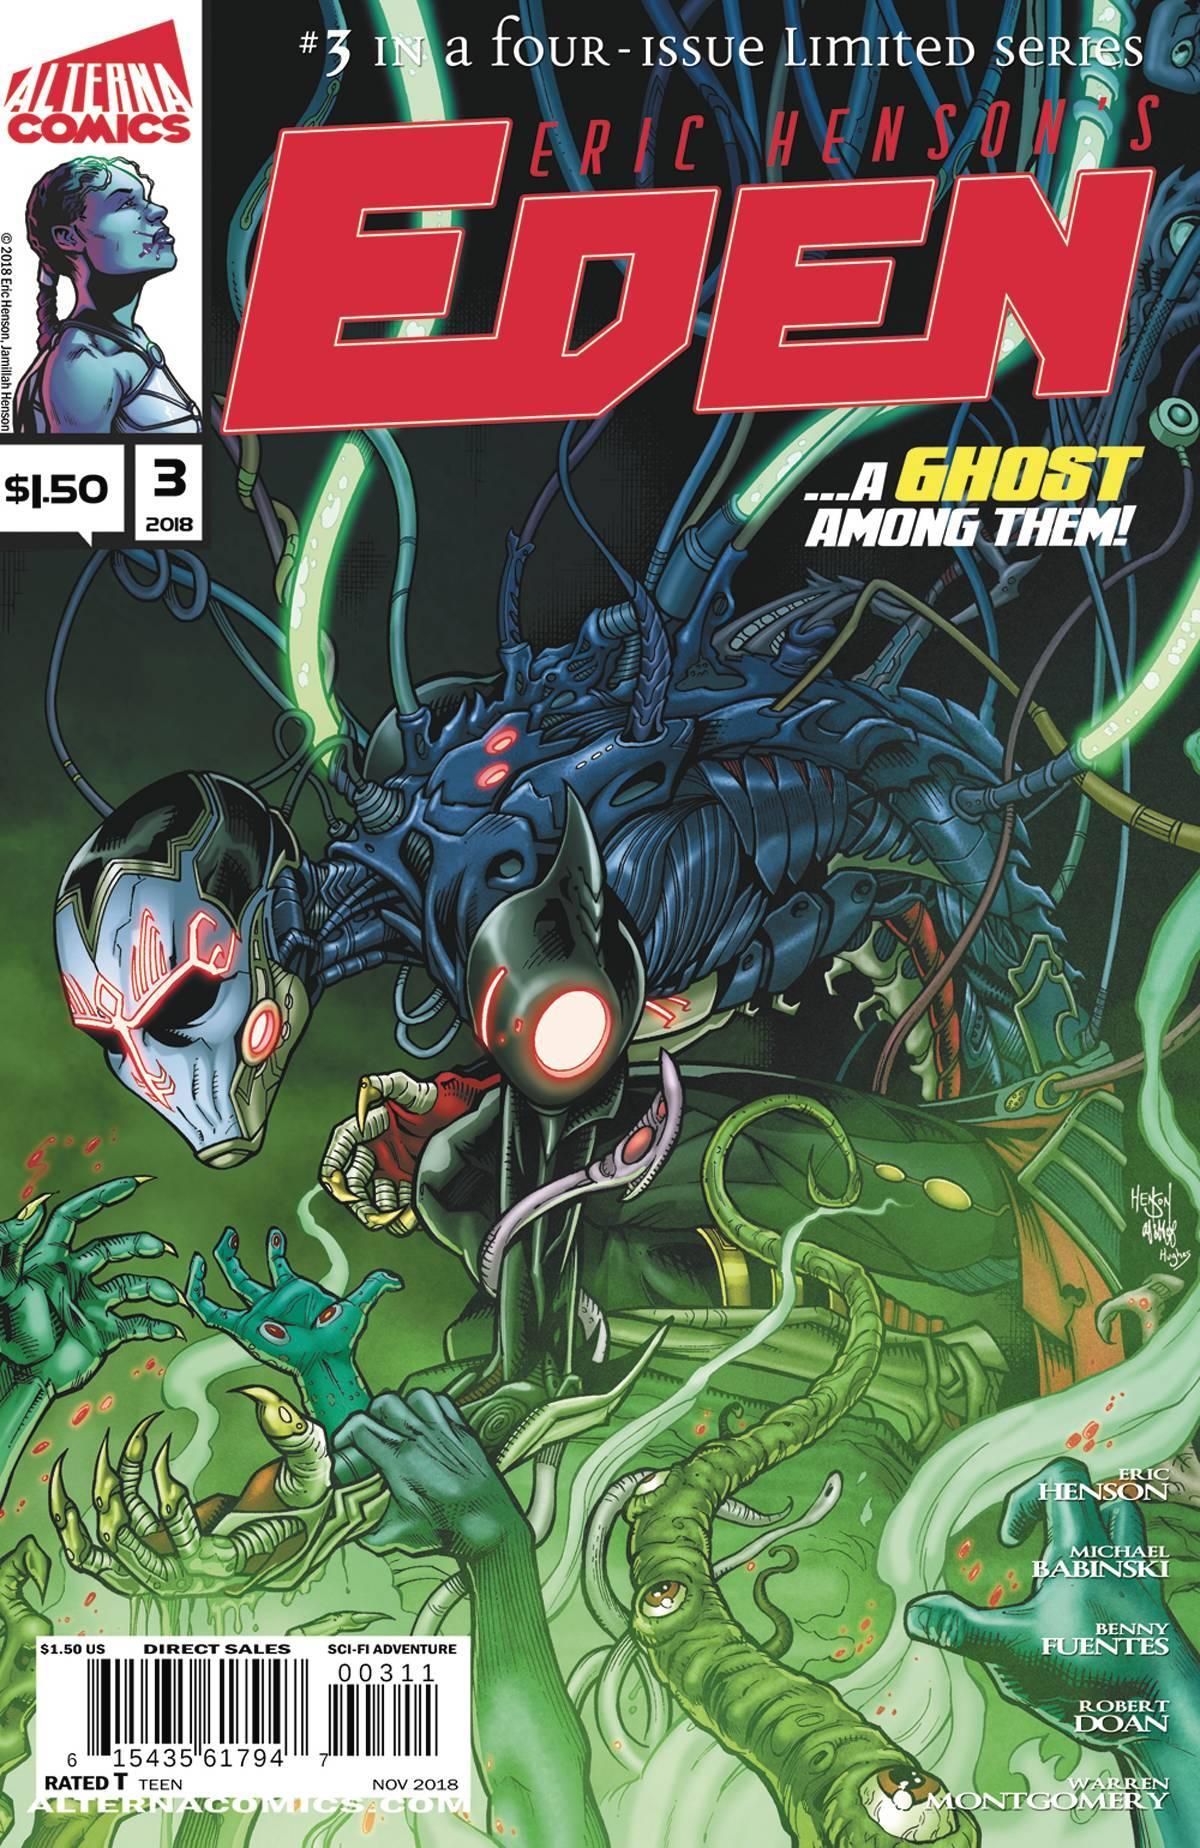 EDEN #3 - Kings Comics